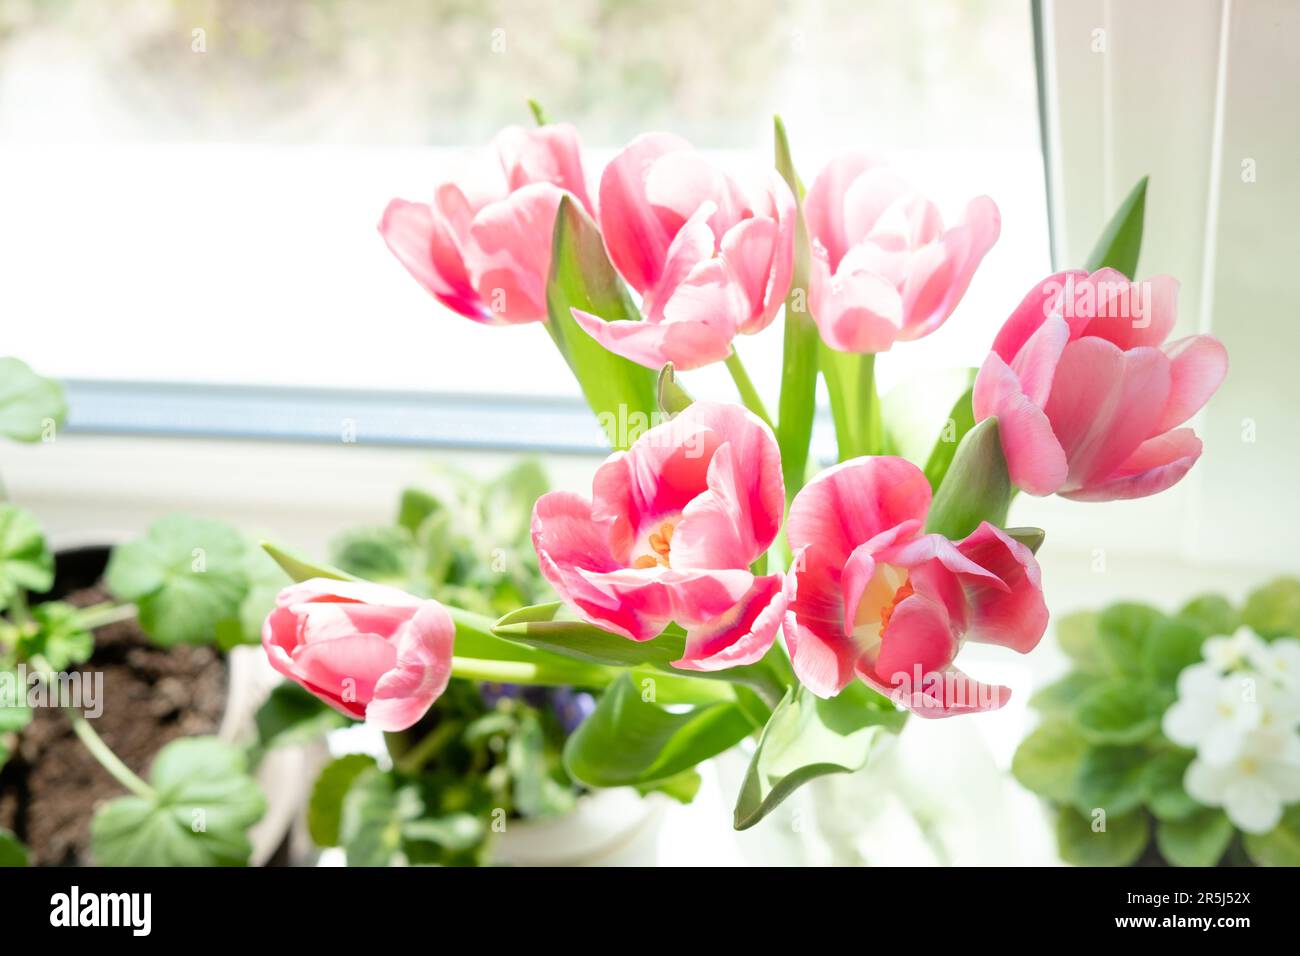 Ein Strauß rosa Tulpen in einer transparenten Vase auf der Fensterbank vor dem Hintergrund des Fensters. Blumenstrauß als Geschenk an deine Geliebte Stockfoto